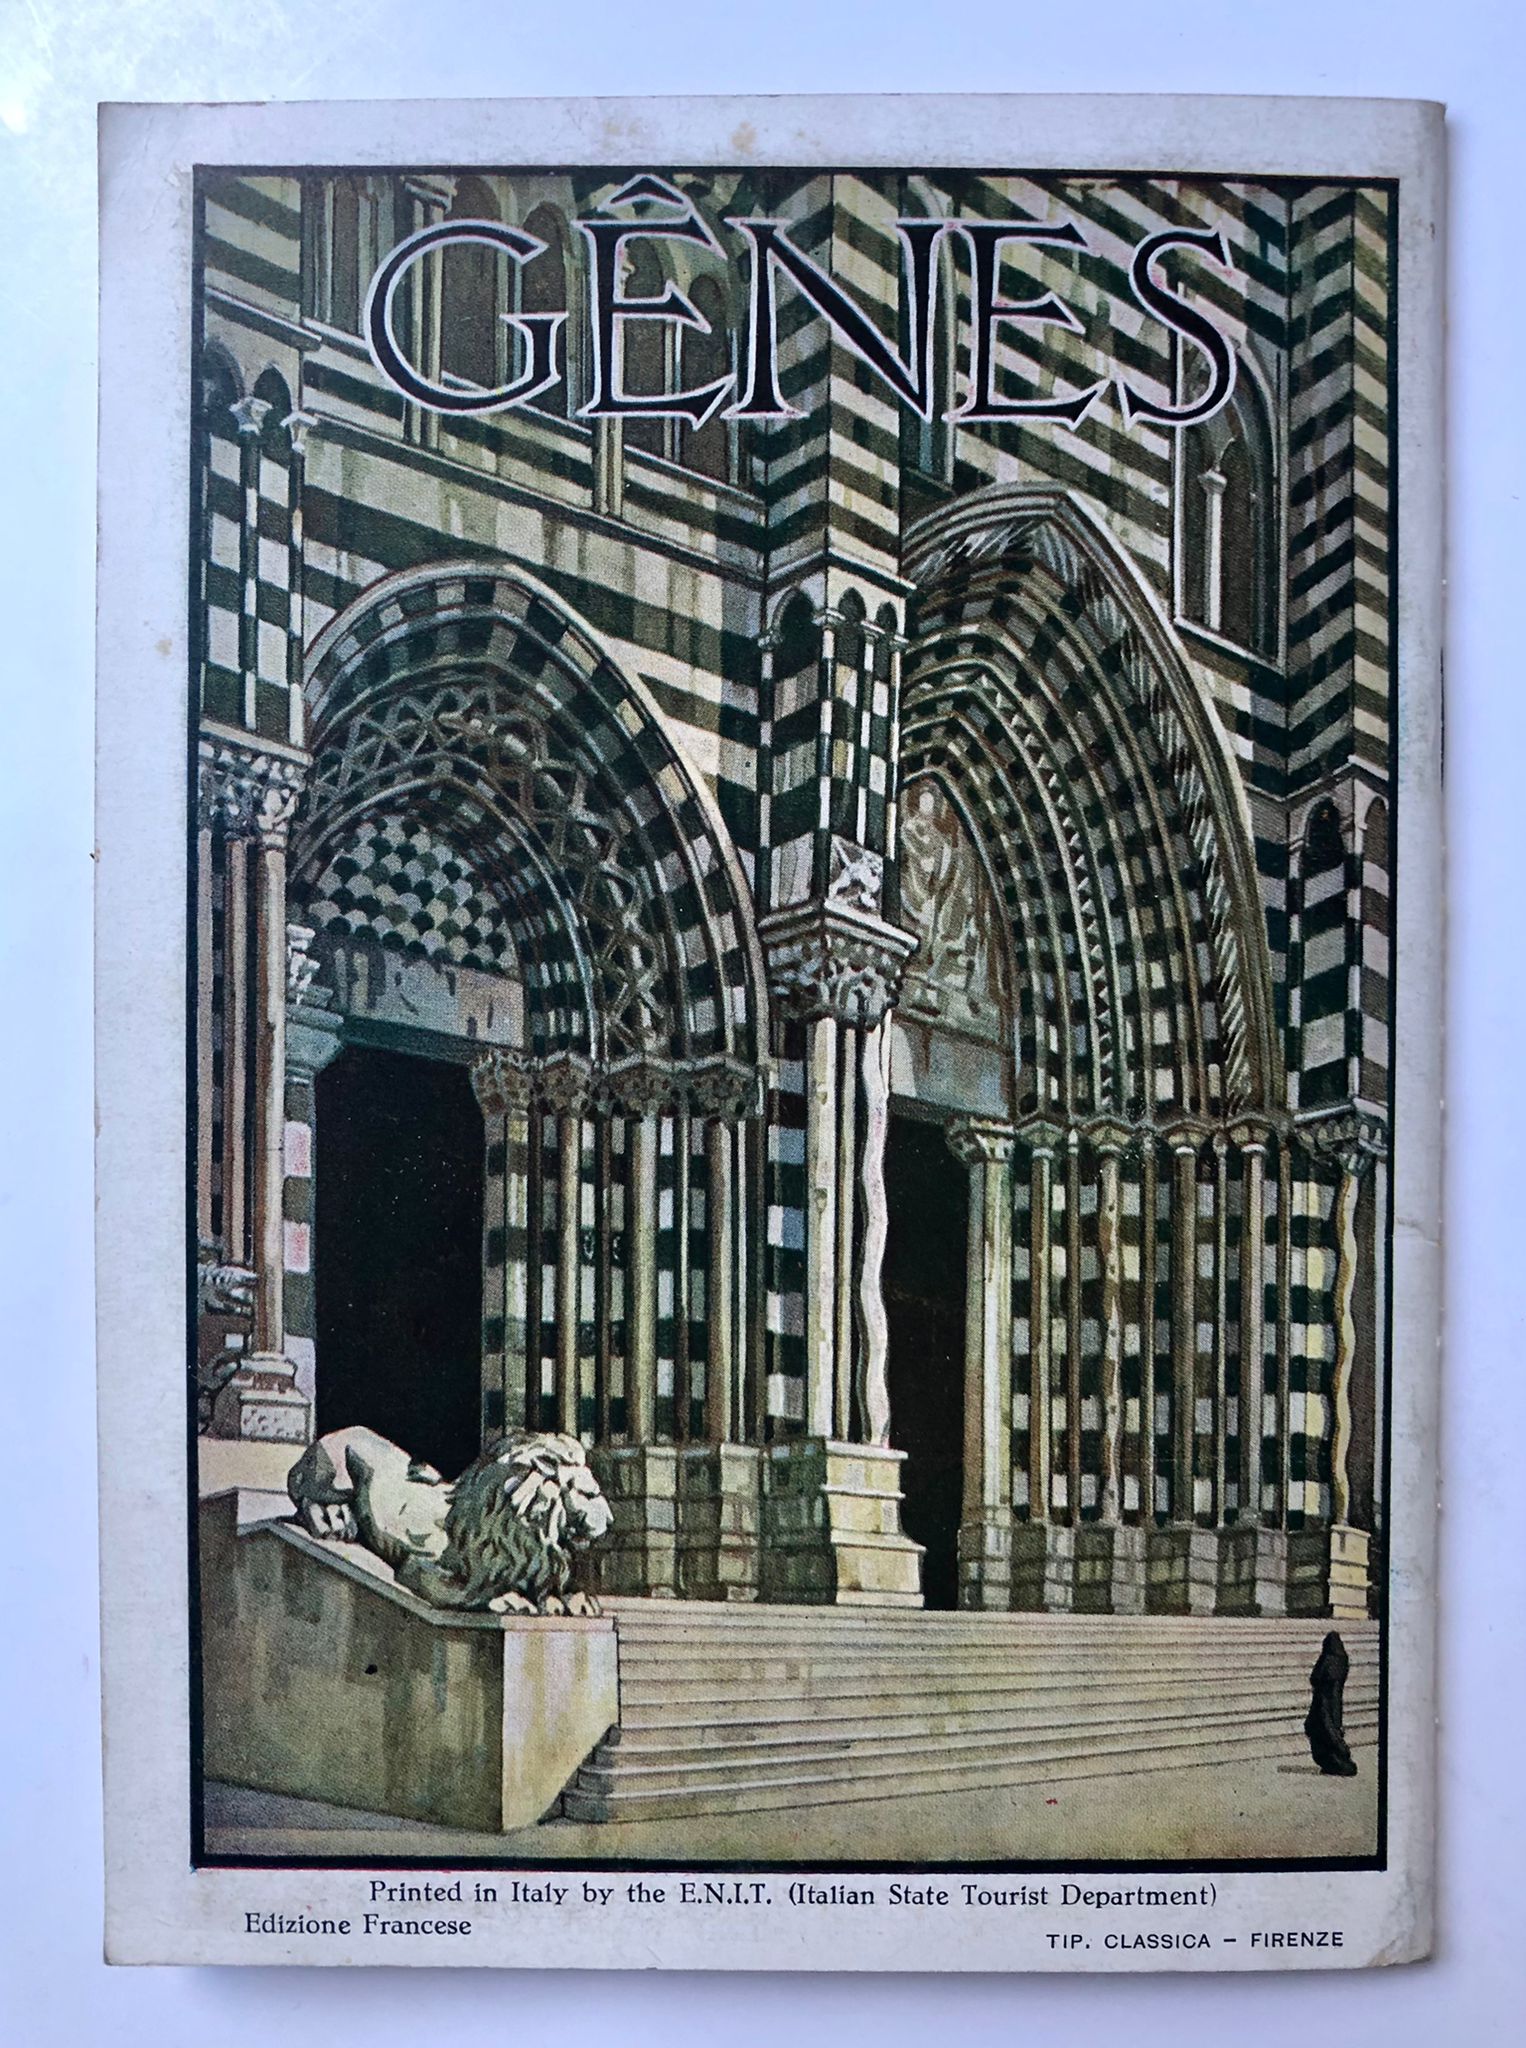 [Italy] Gênes, Ente Nazionale industrie Turistiche Ferrovie Dello Stato, Edizione Francese, E.N.I.T. (Italian State Tourist Department), Italy, 31 pp.